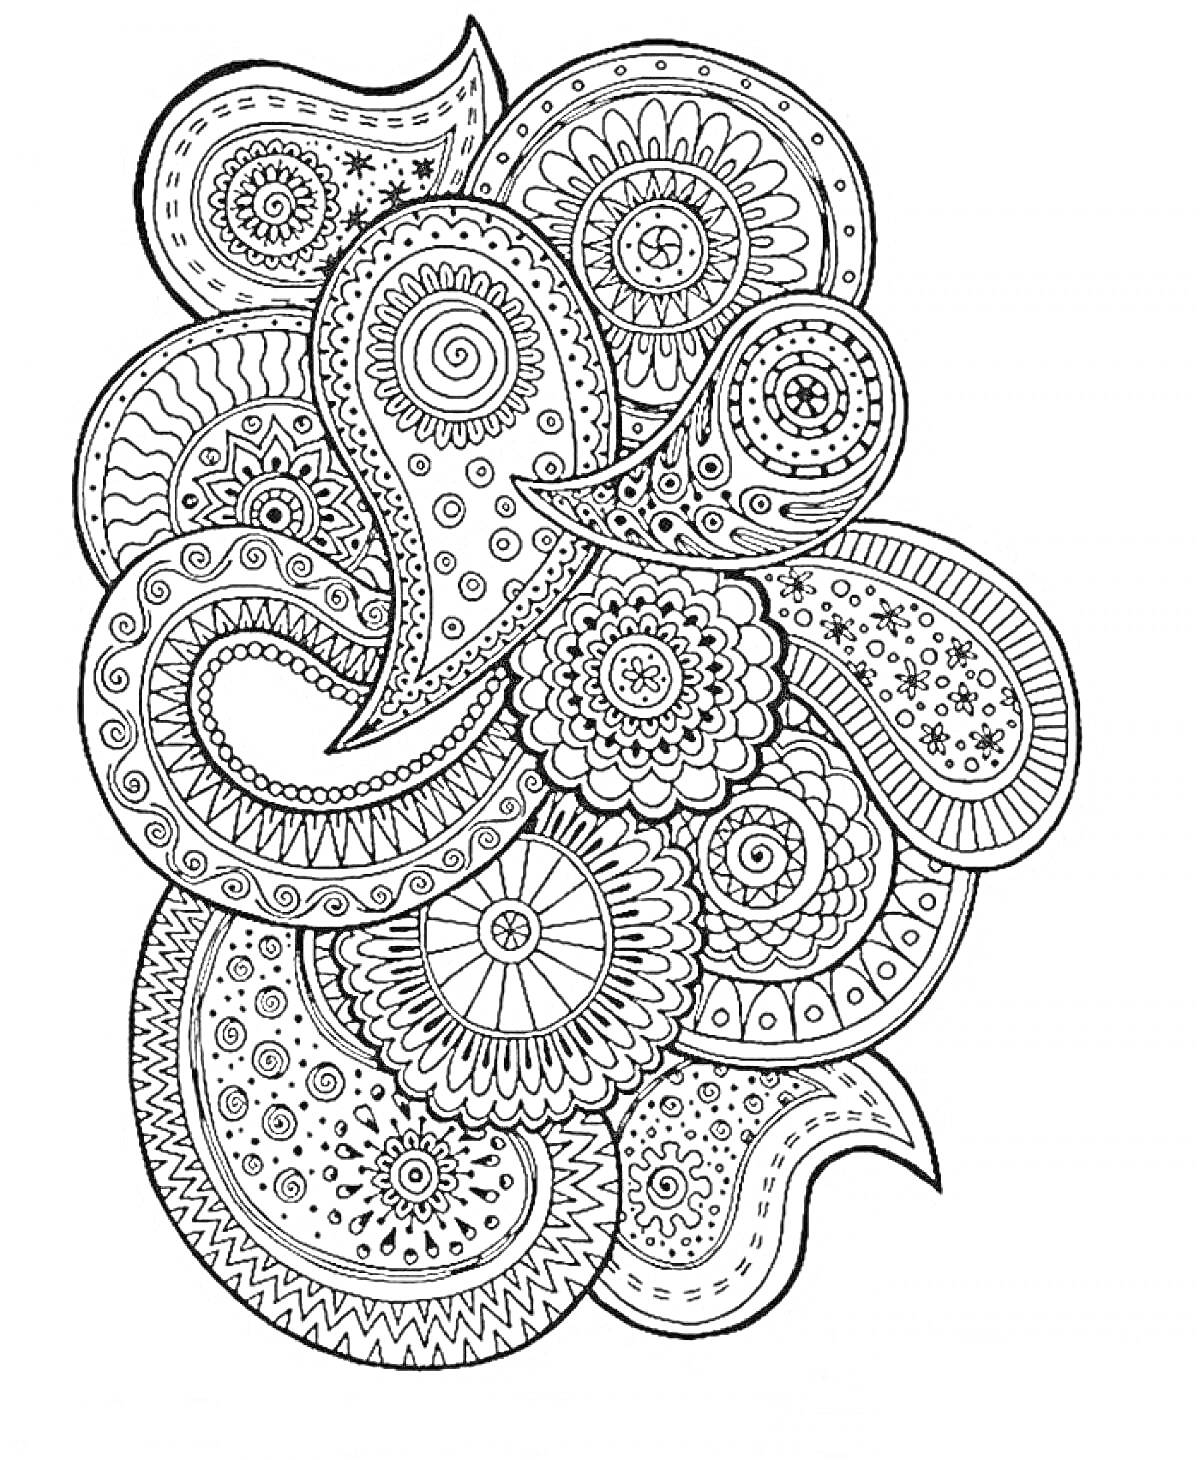 Раскраска Антистресс раскраска с изображением узоров пейсли, мандал и круговых орнаментов